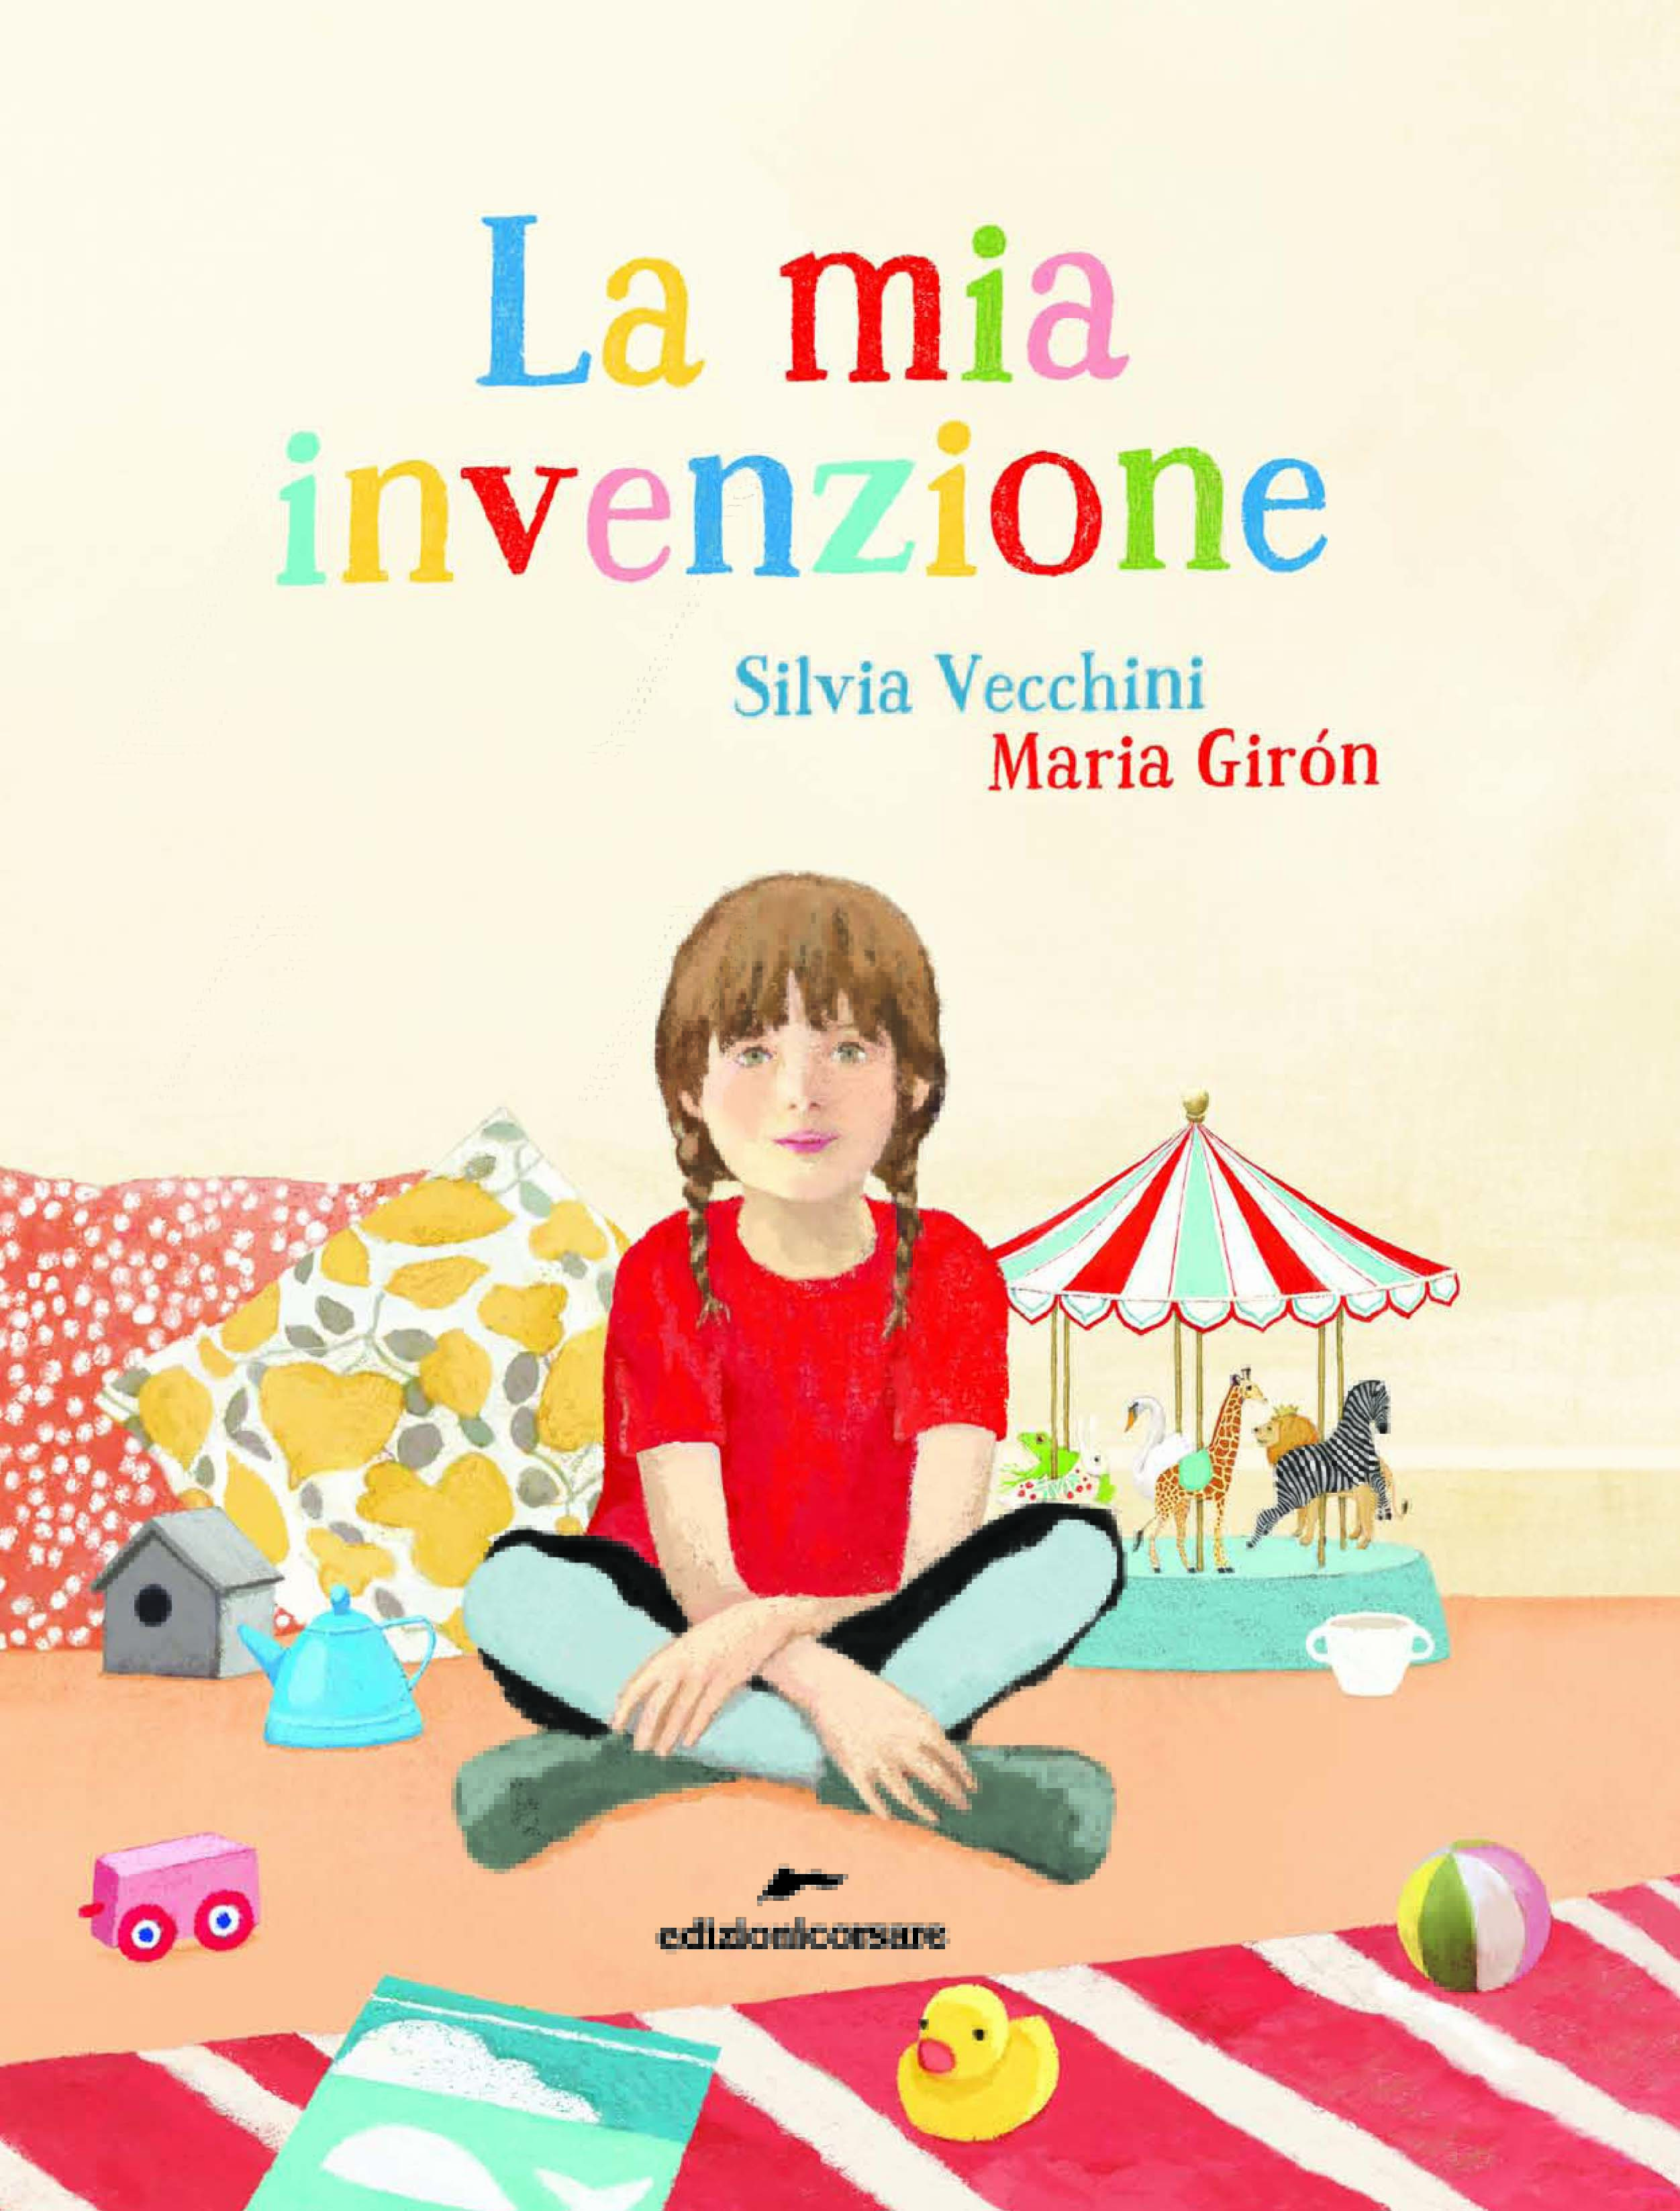 La mia invenzione, Silvia Vecchini, Maria Giron, Edizioni Corsare